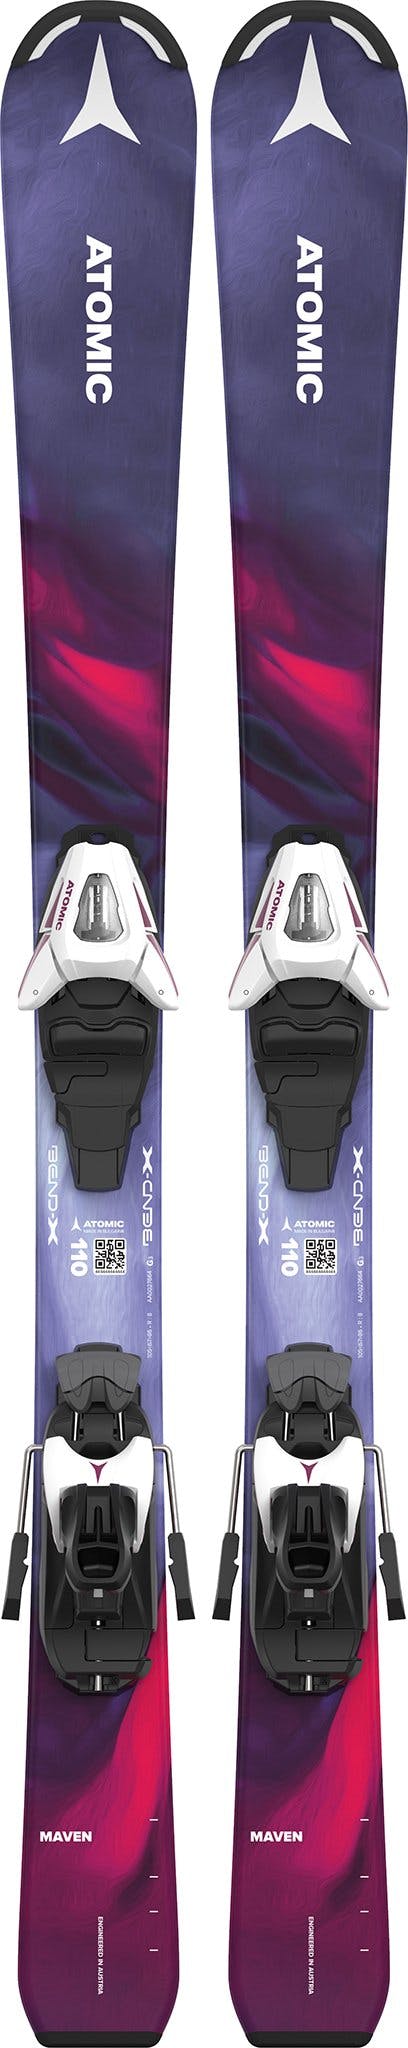 Product image for Maven 100-120 Skis with C5 GW Ski Bindings - Girl